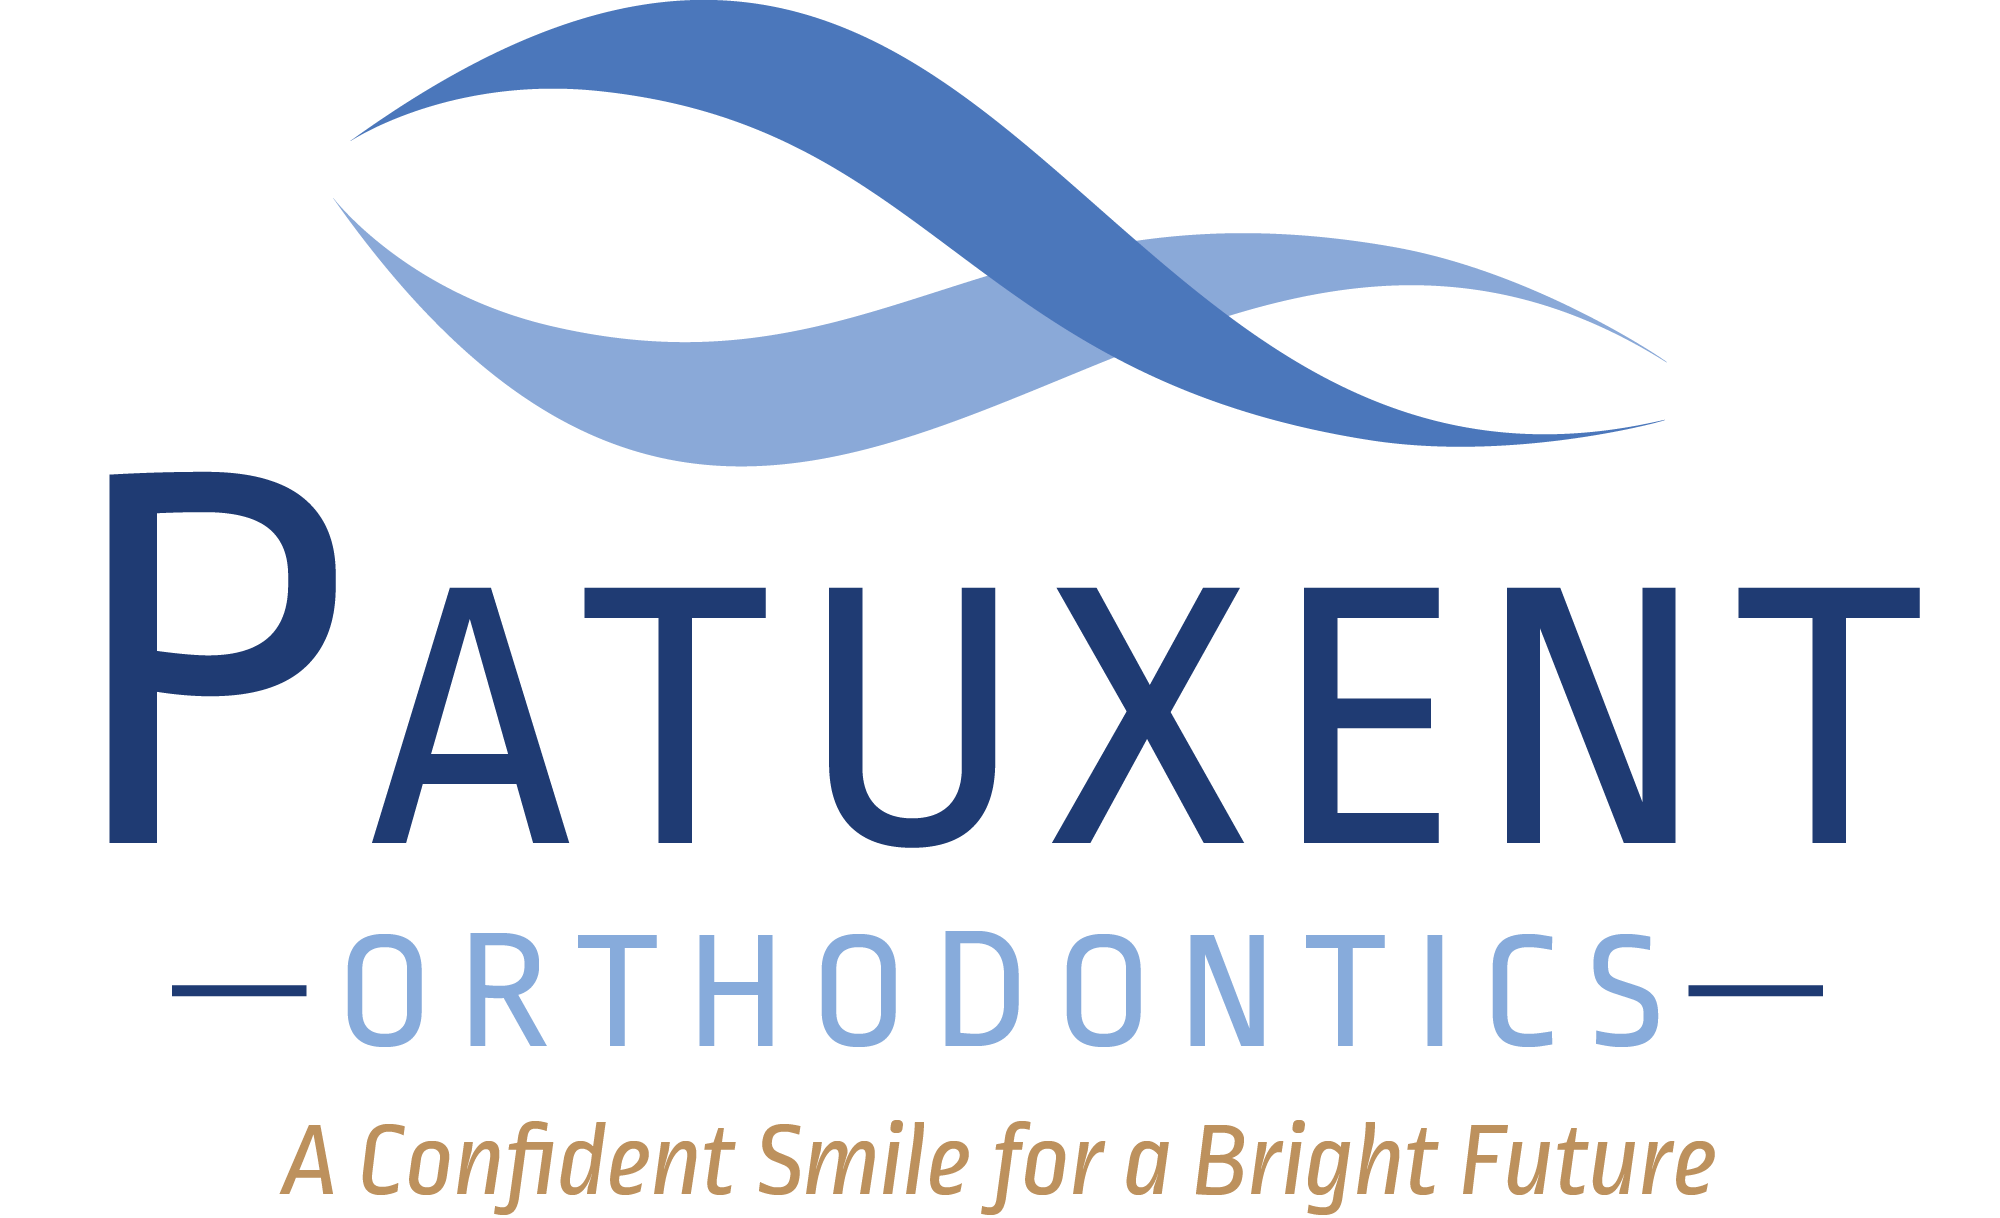 Patuxent Orthodontics